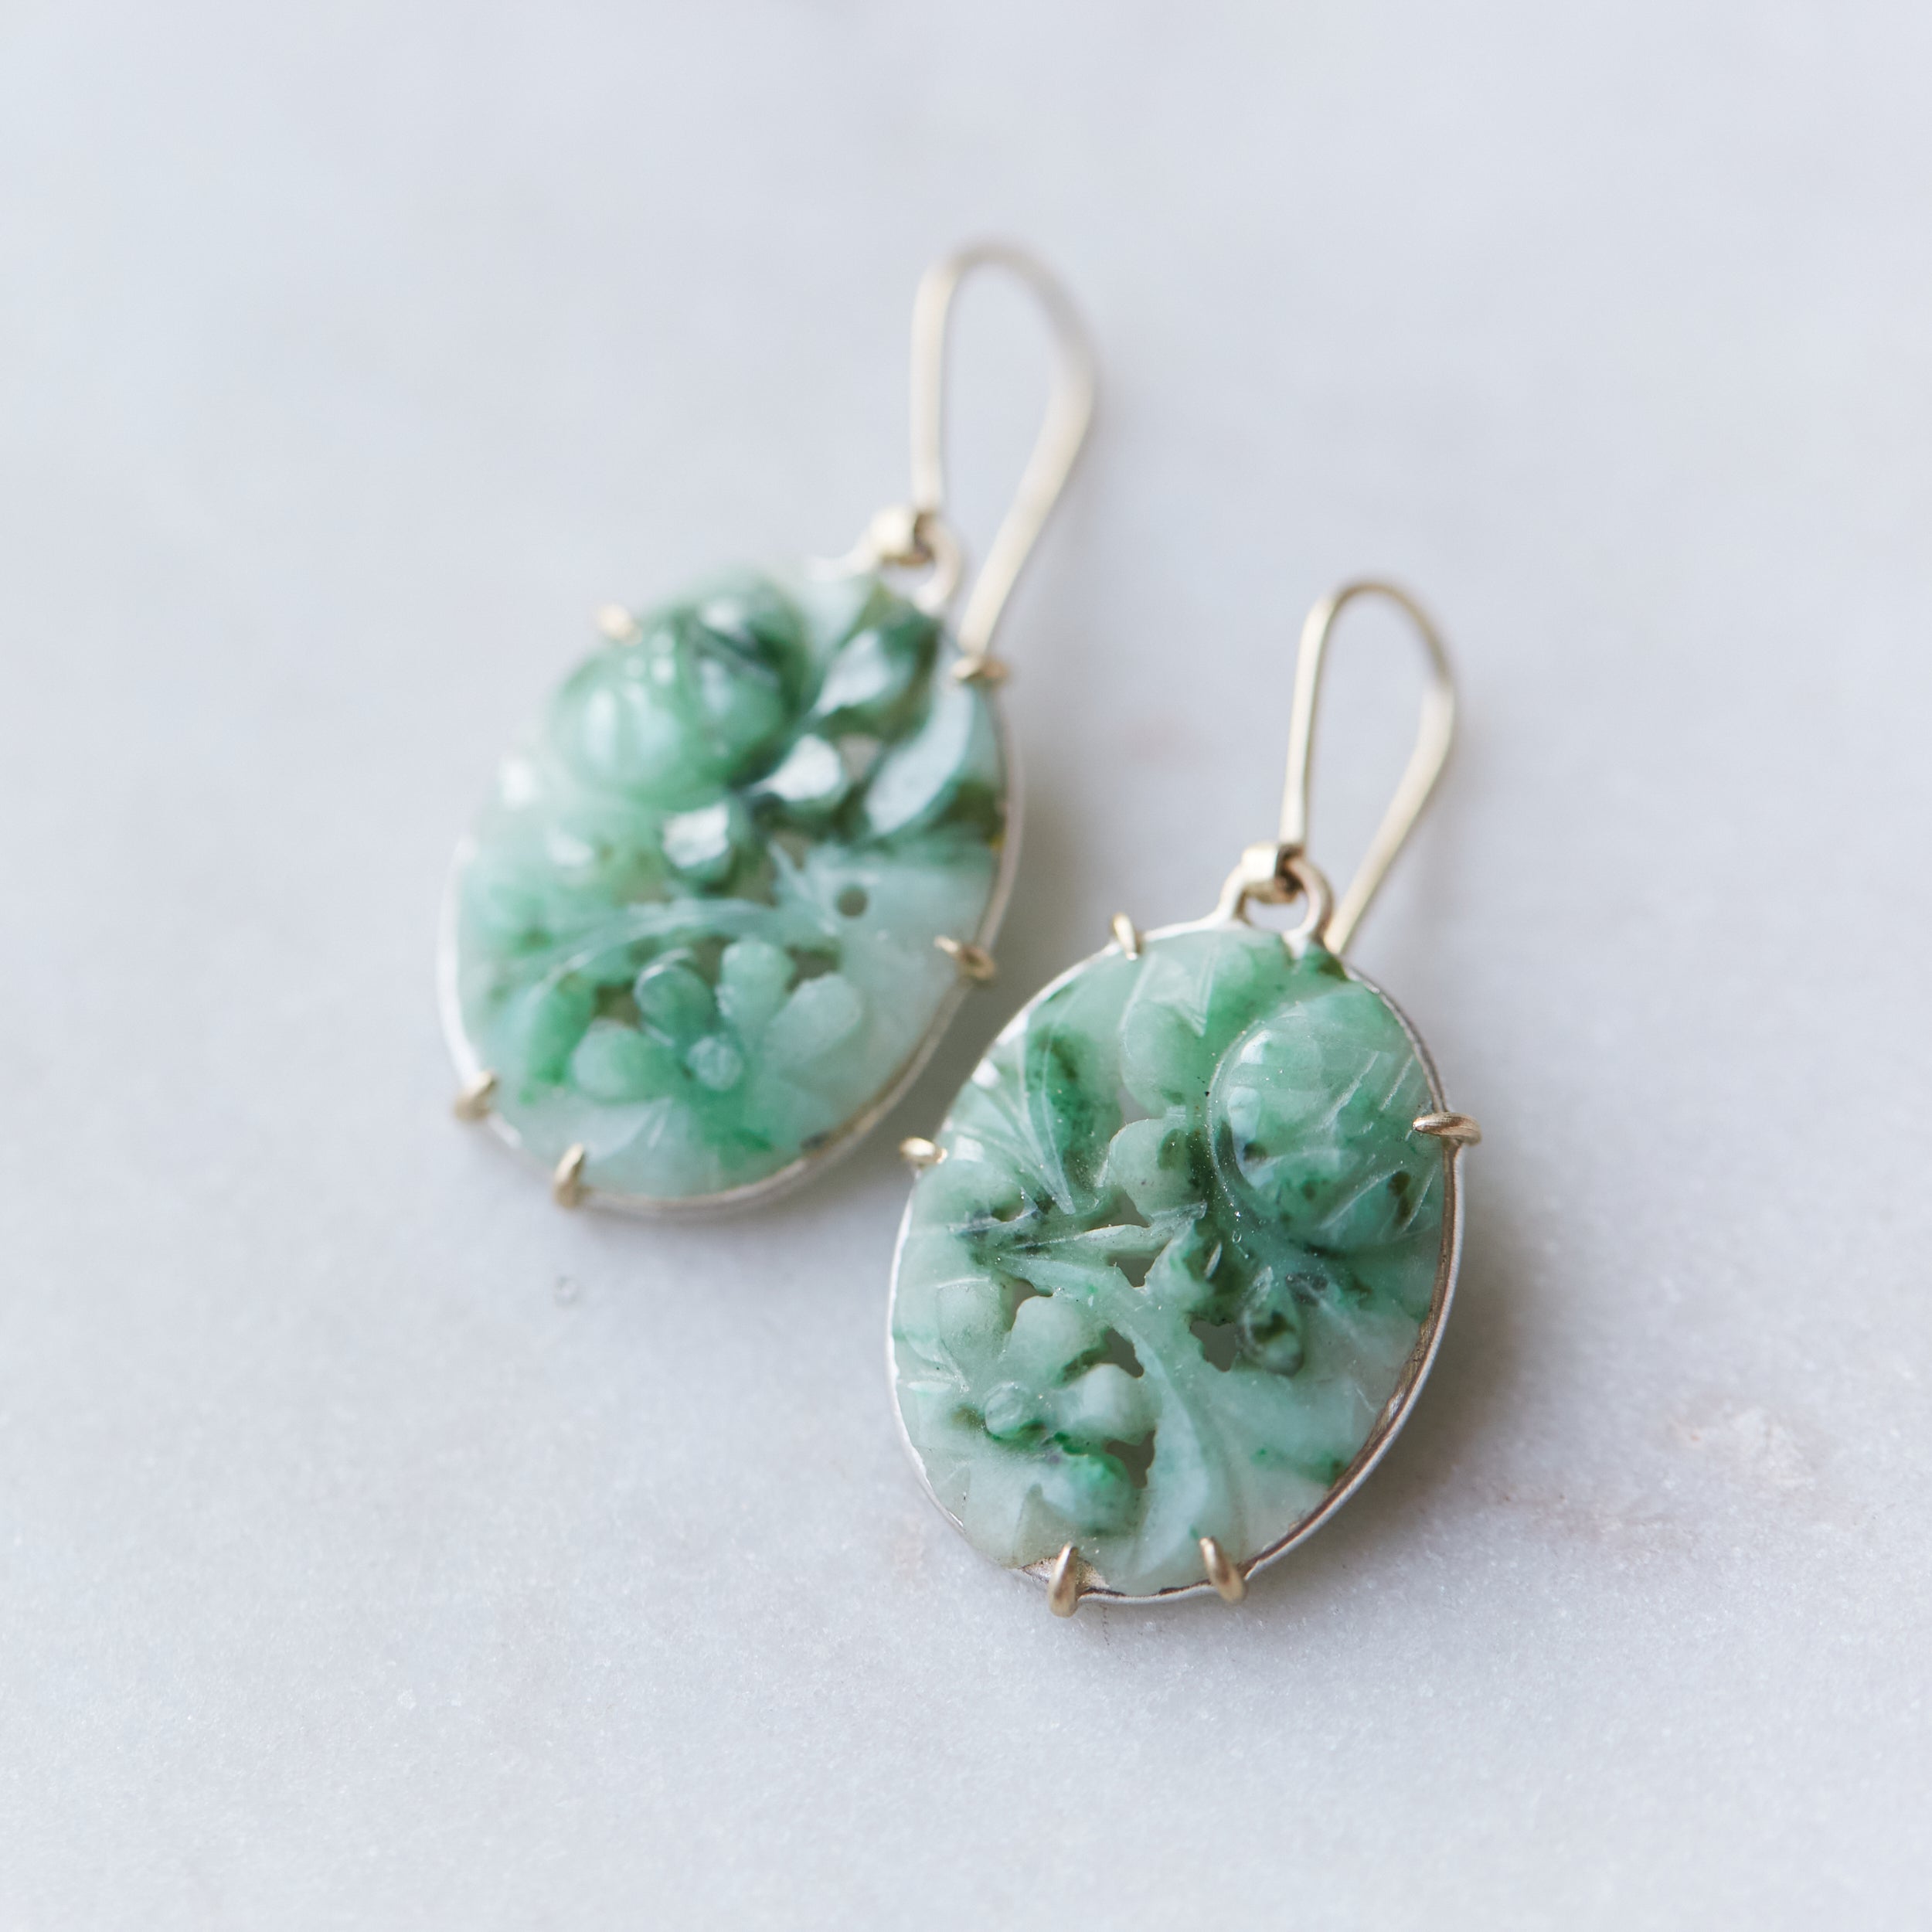 Floral Carved Jade in Silver Screw Back Earrings